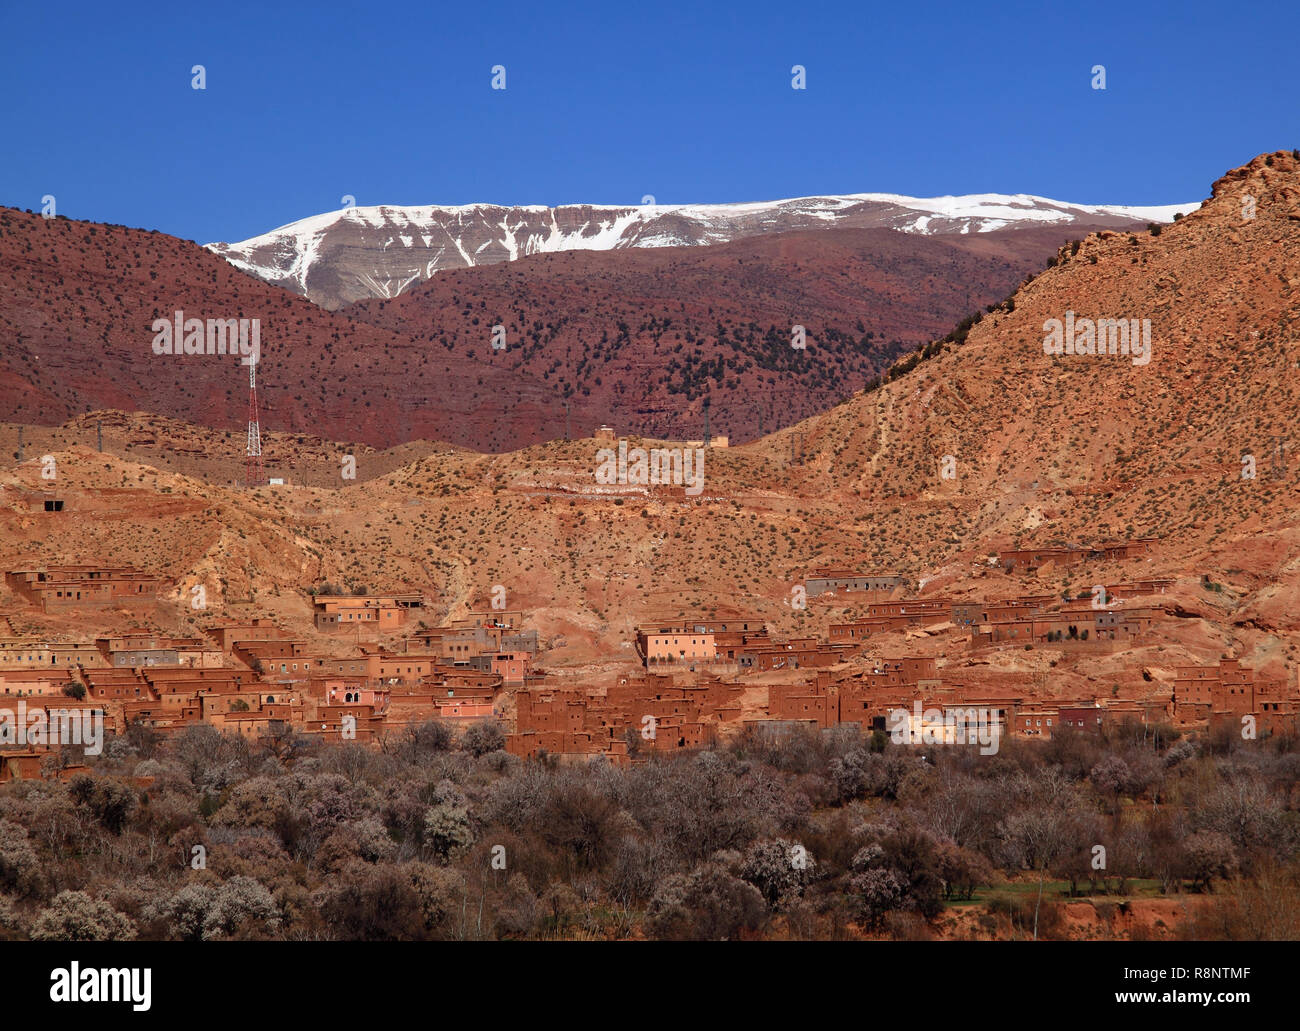 Morocco Marrakesh The High Atlas Mountain range Stock Photo